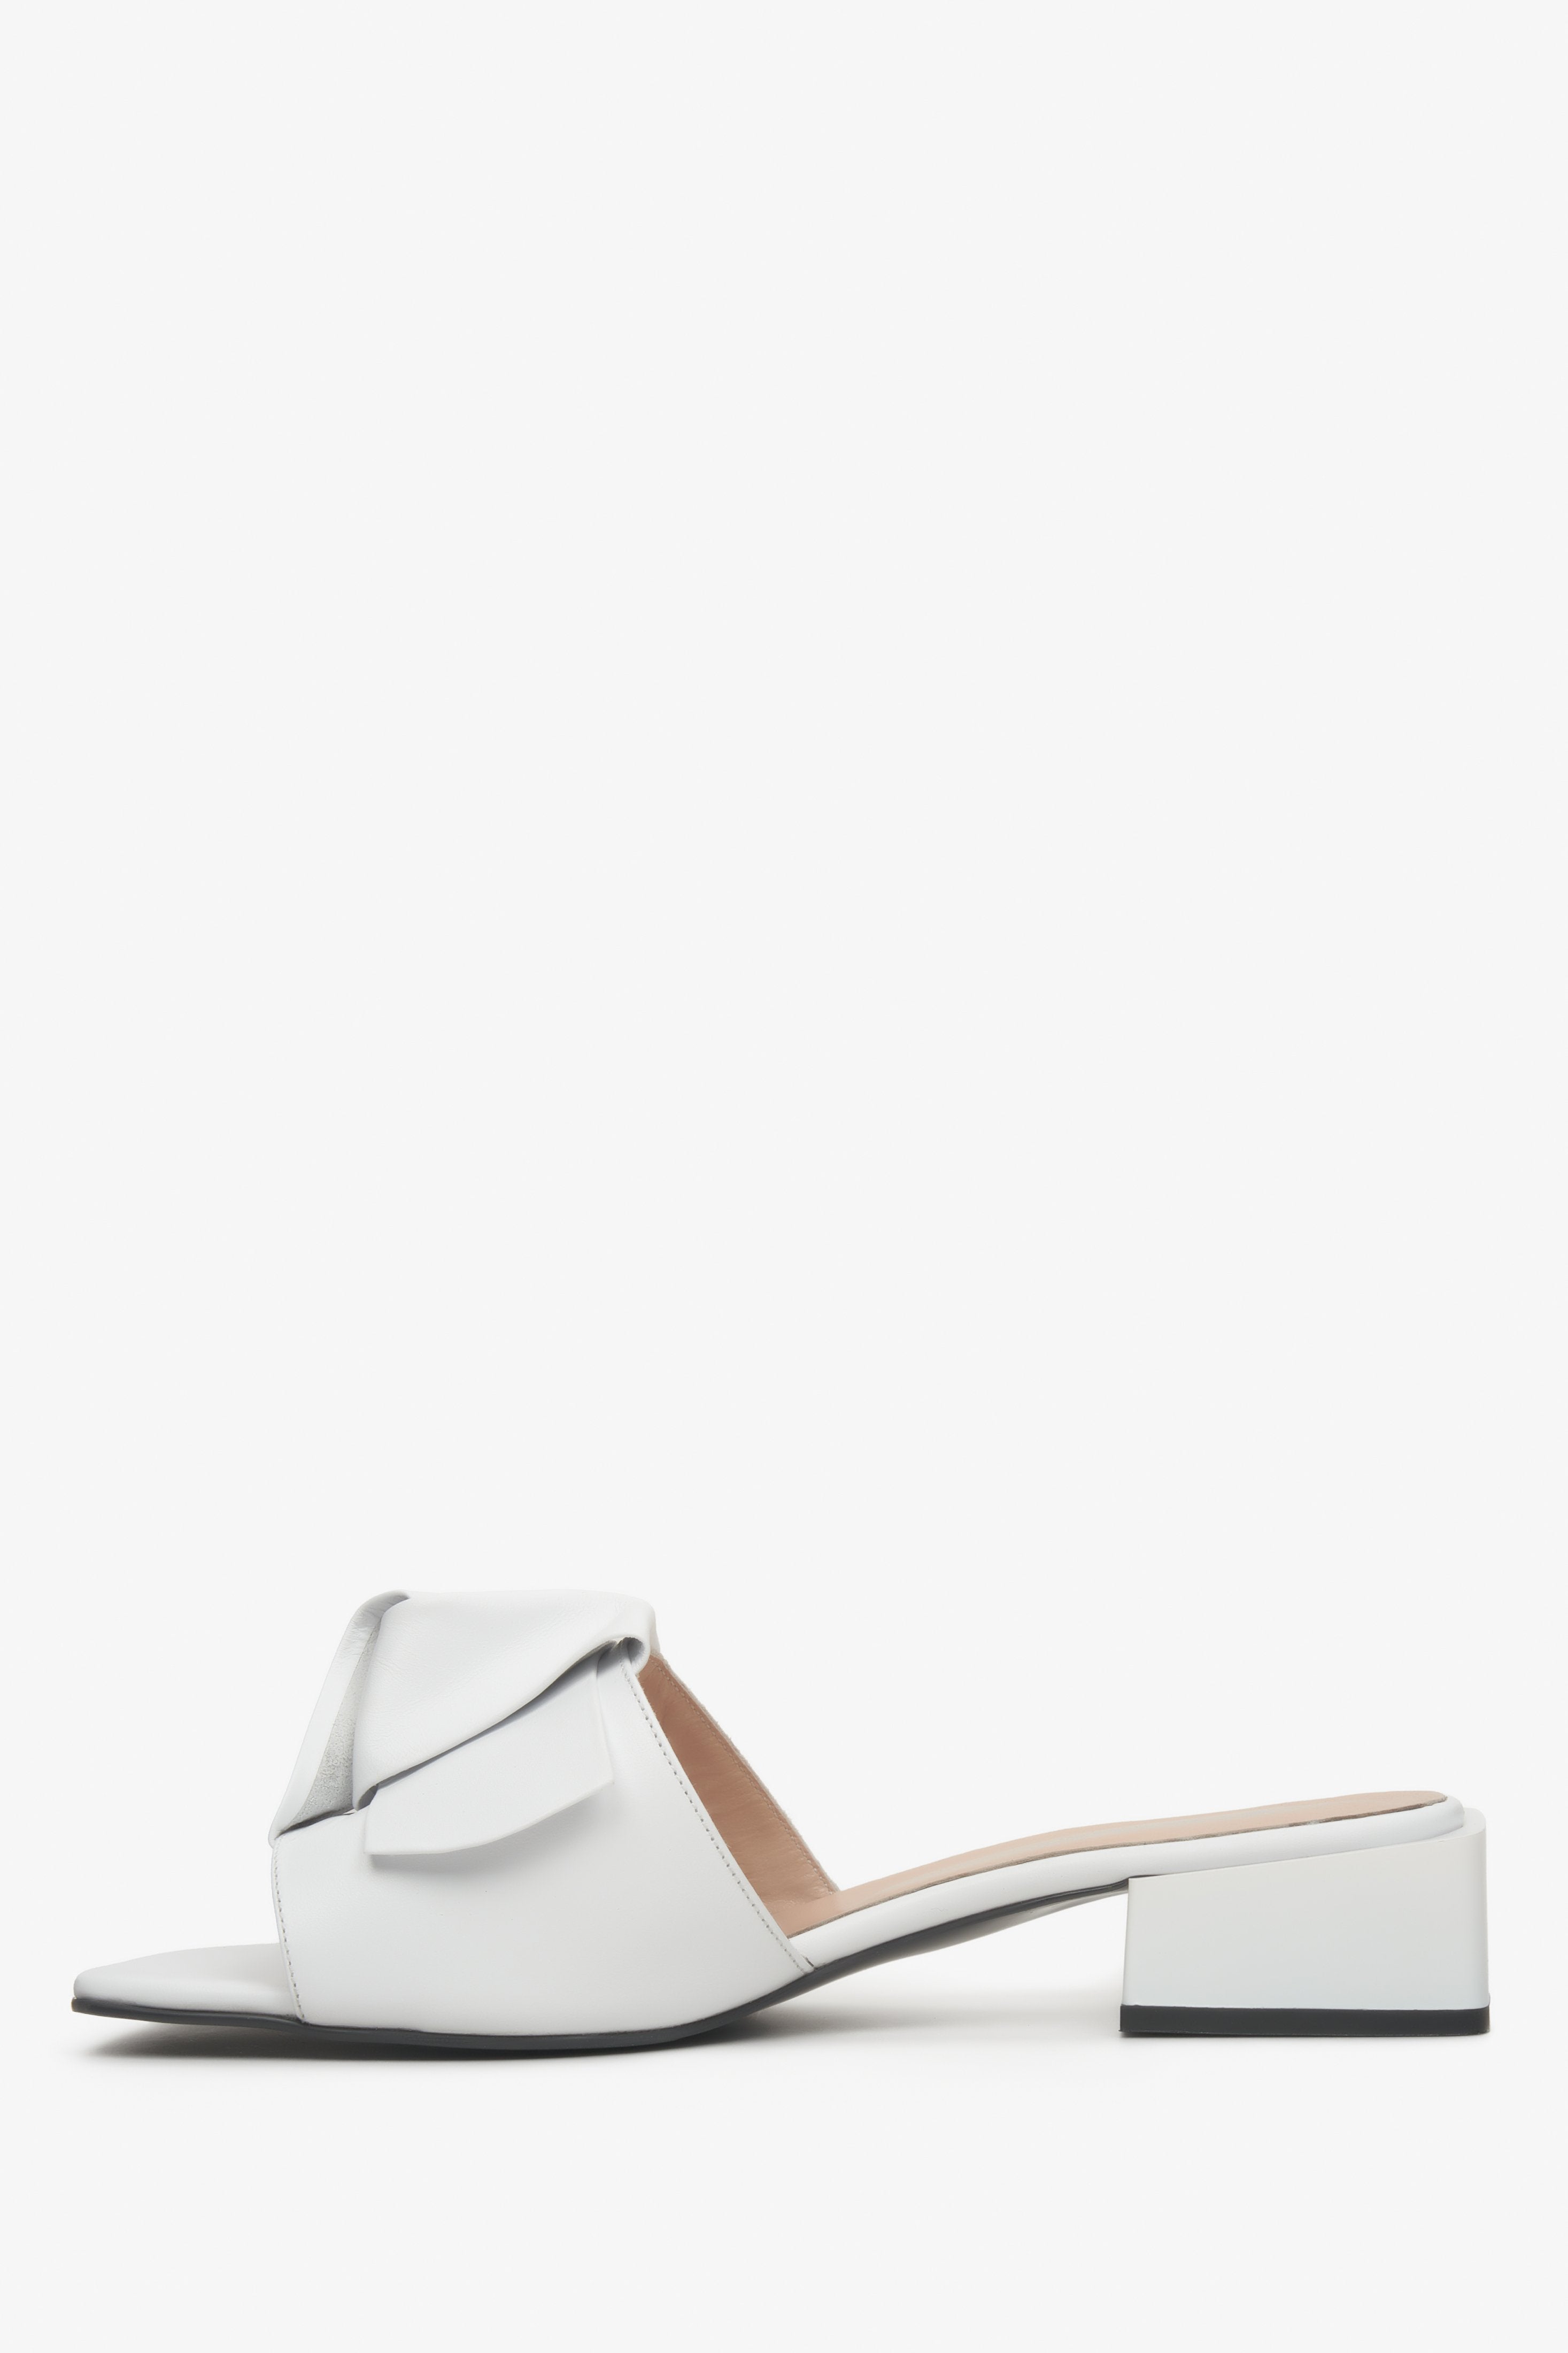 Niskie, skórzane klapki damskie Estro w kolorze białym - profil butów.